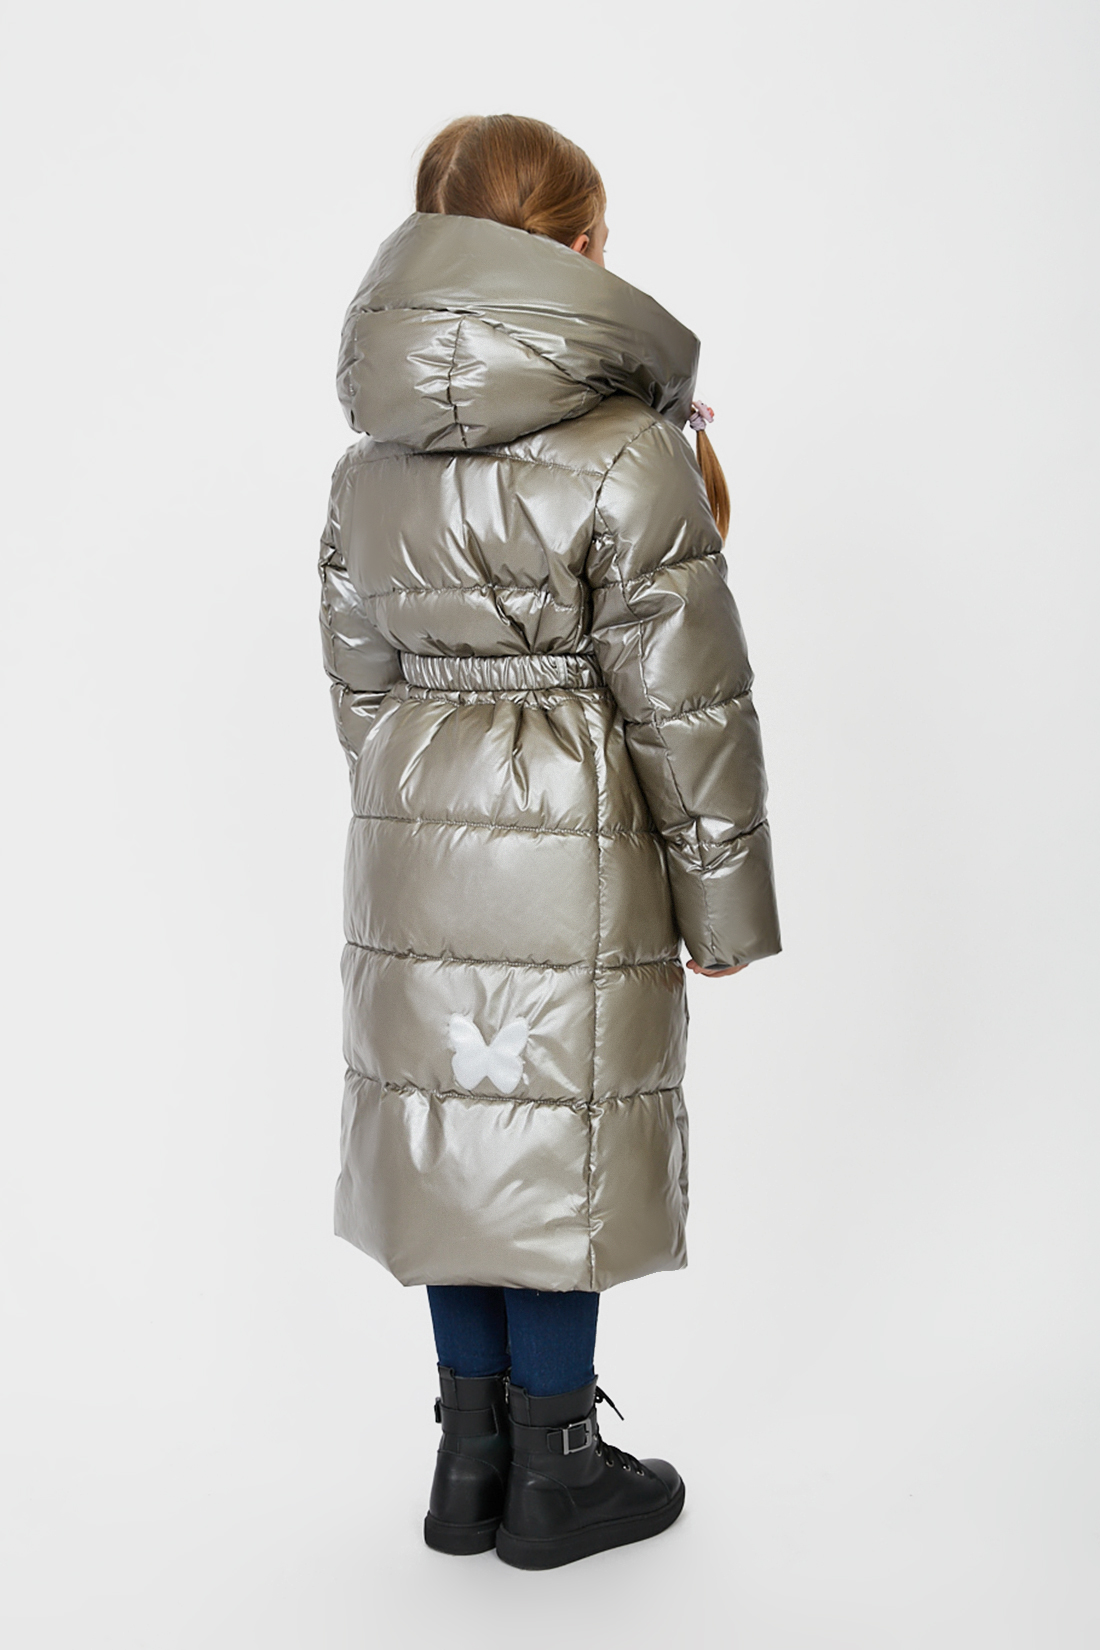 Куртка (Эко пух) (арт. baon BK041807), размер 122, цвет серый Куртка (Эко пух) (арт. baon BK041807) - фото 2